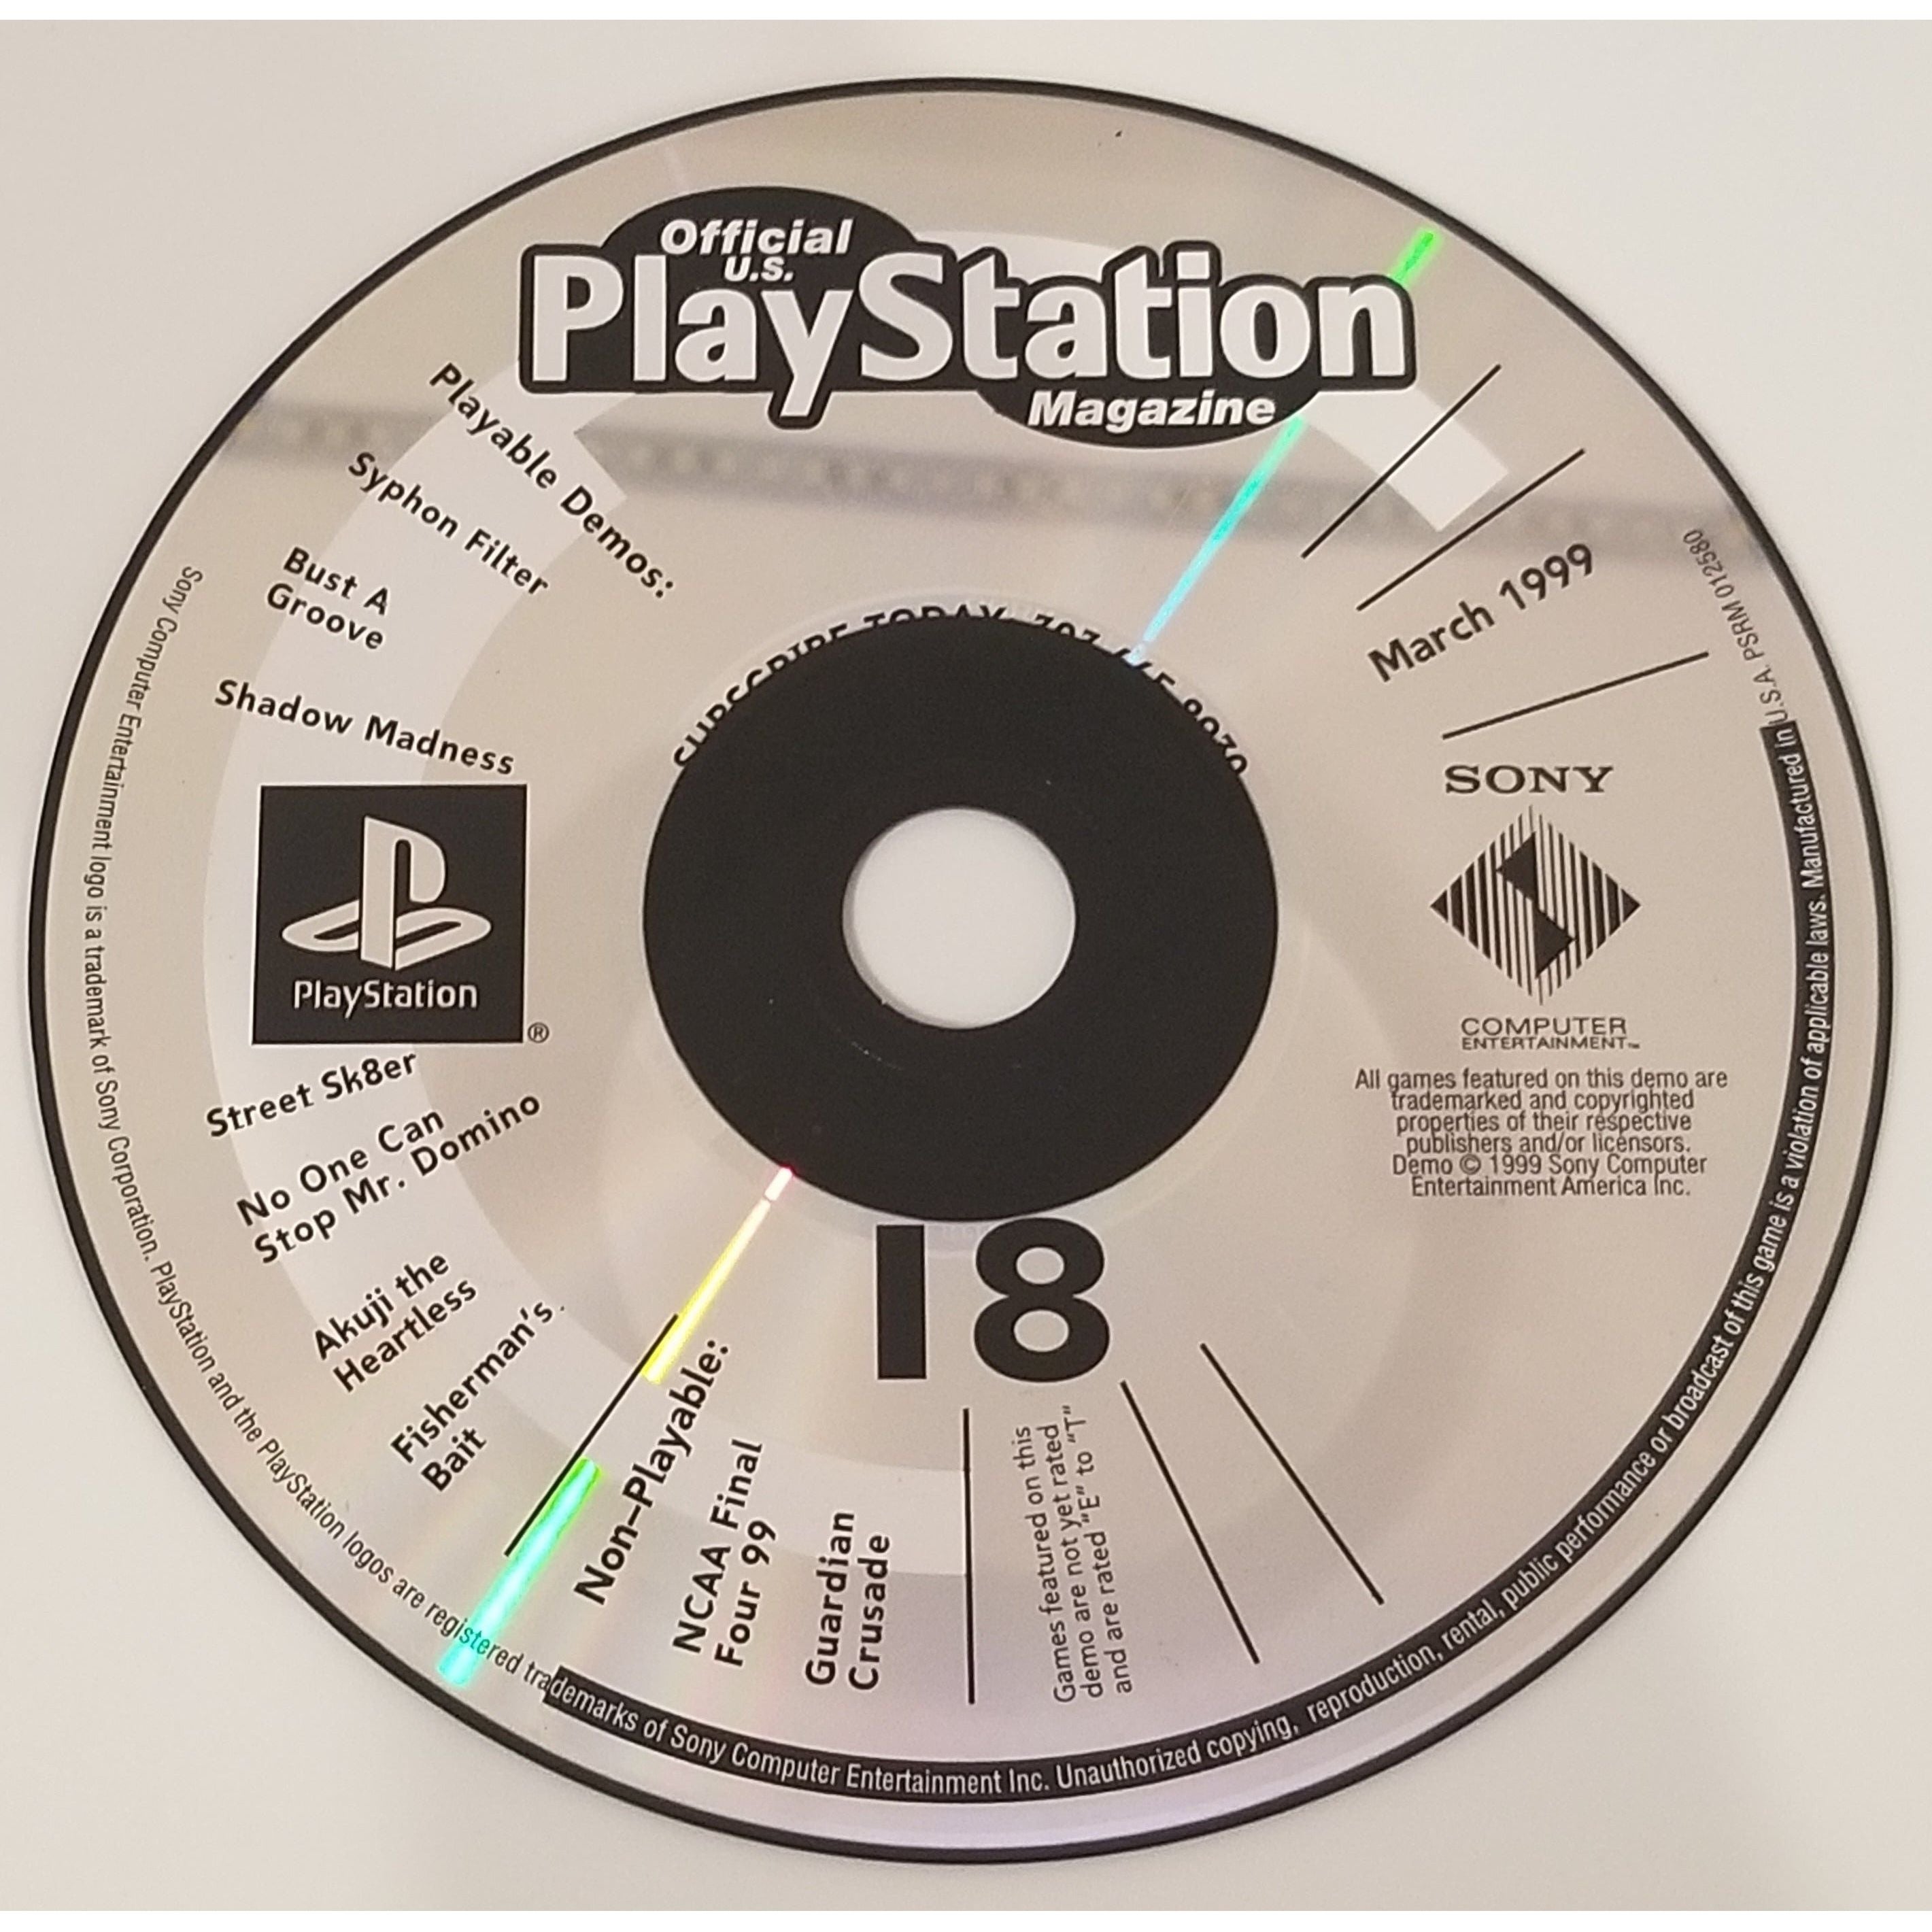 PS1 - Démo officielle du Playstation Magazine numéro 18